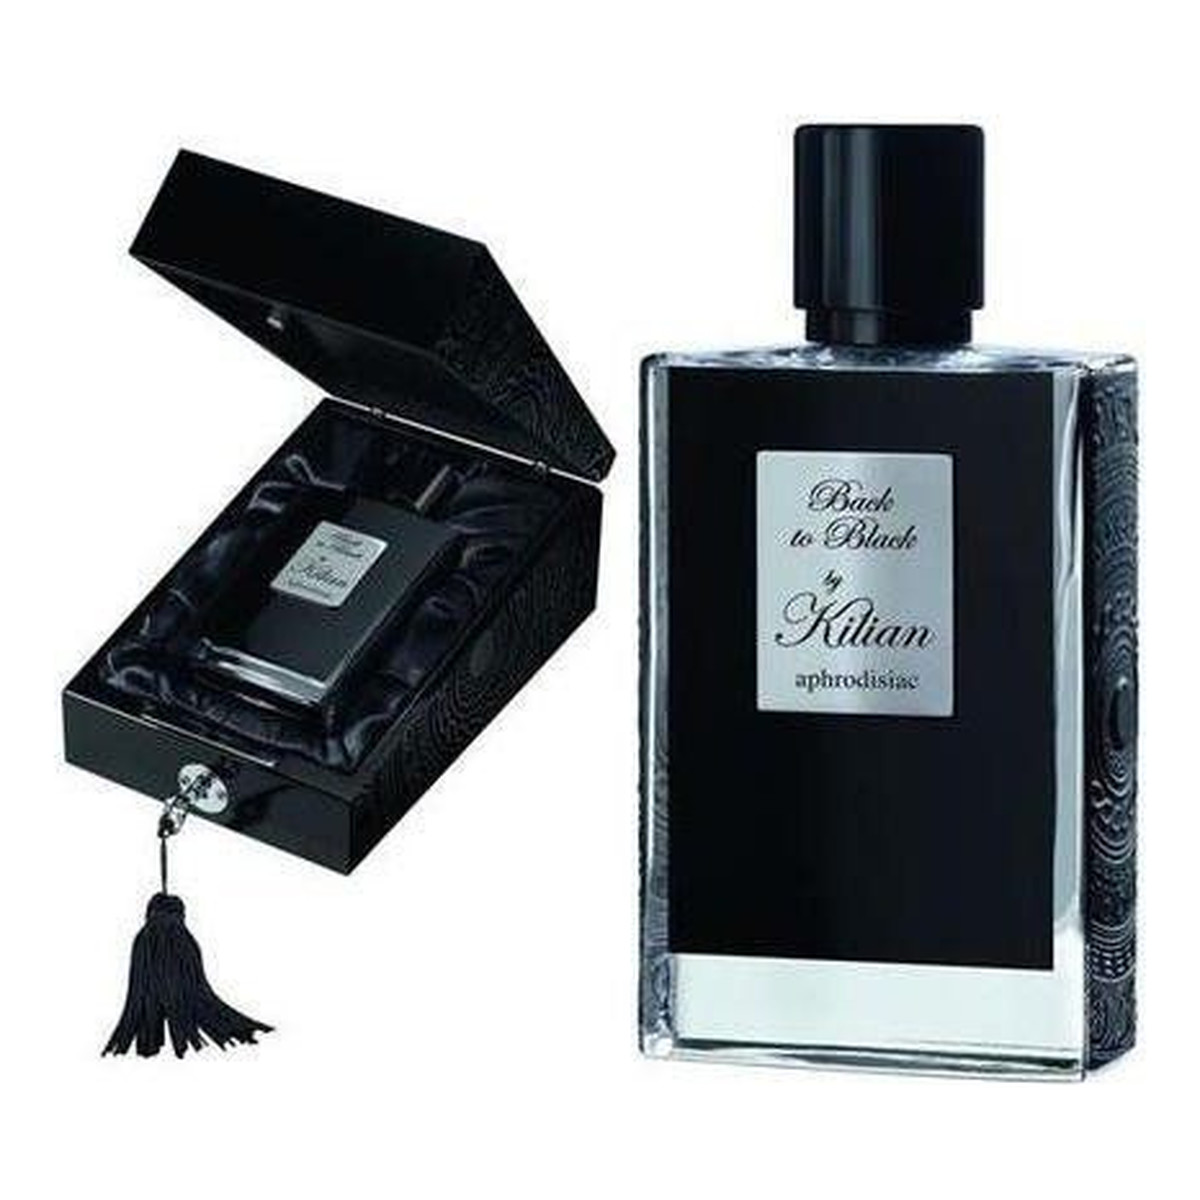 By Kilian Back to Black Aphrodisiac Woda perfumowana z wymiennym wkładem spray 50ml